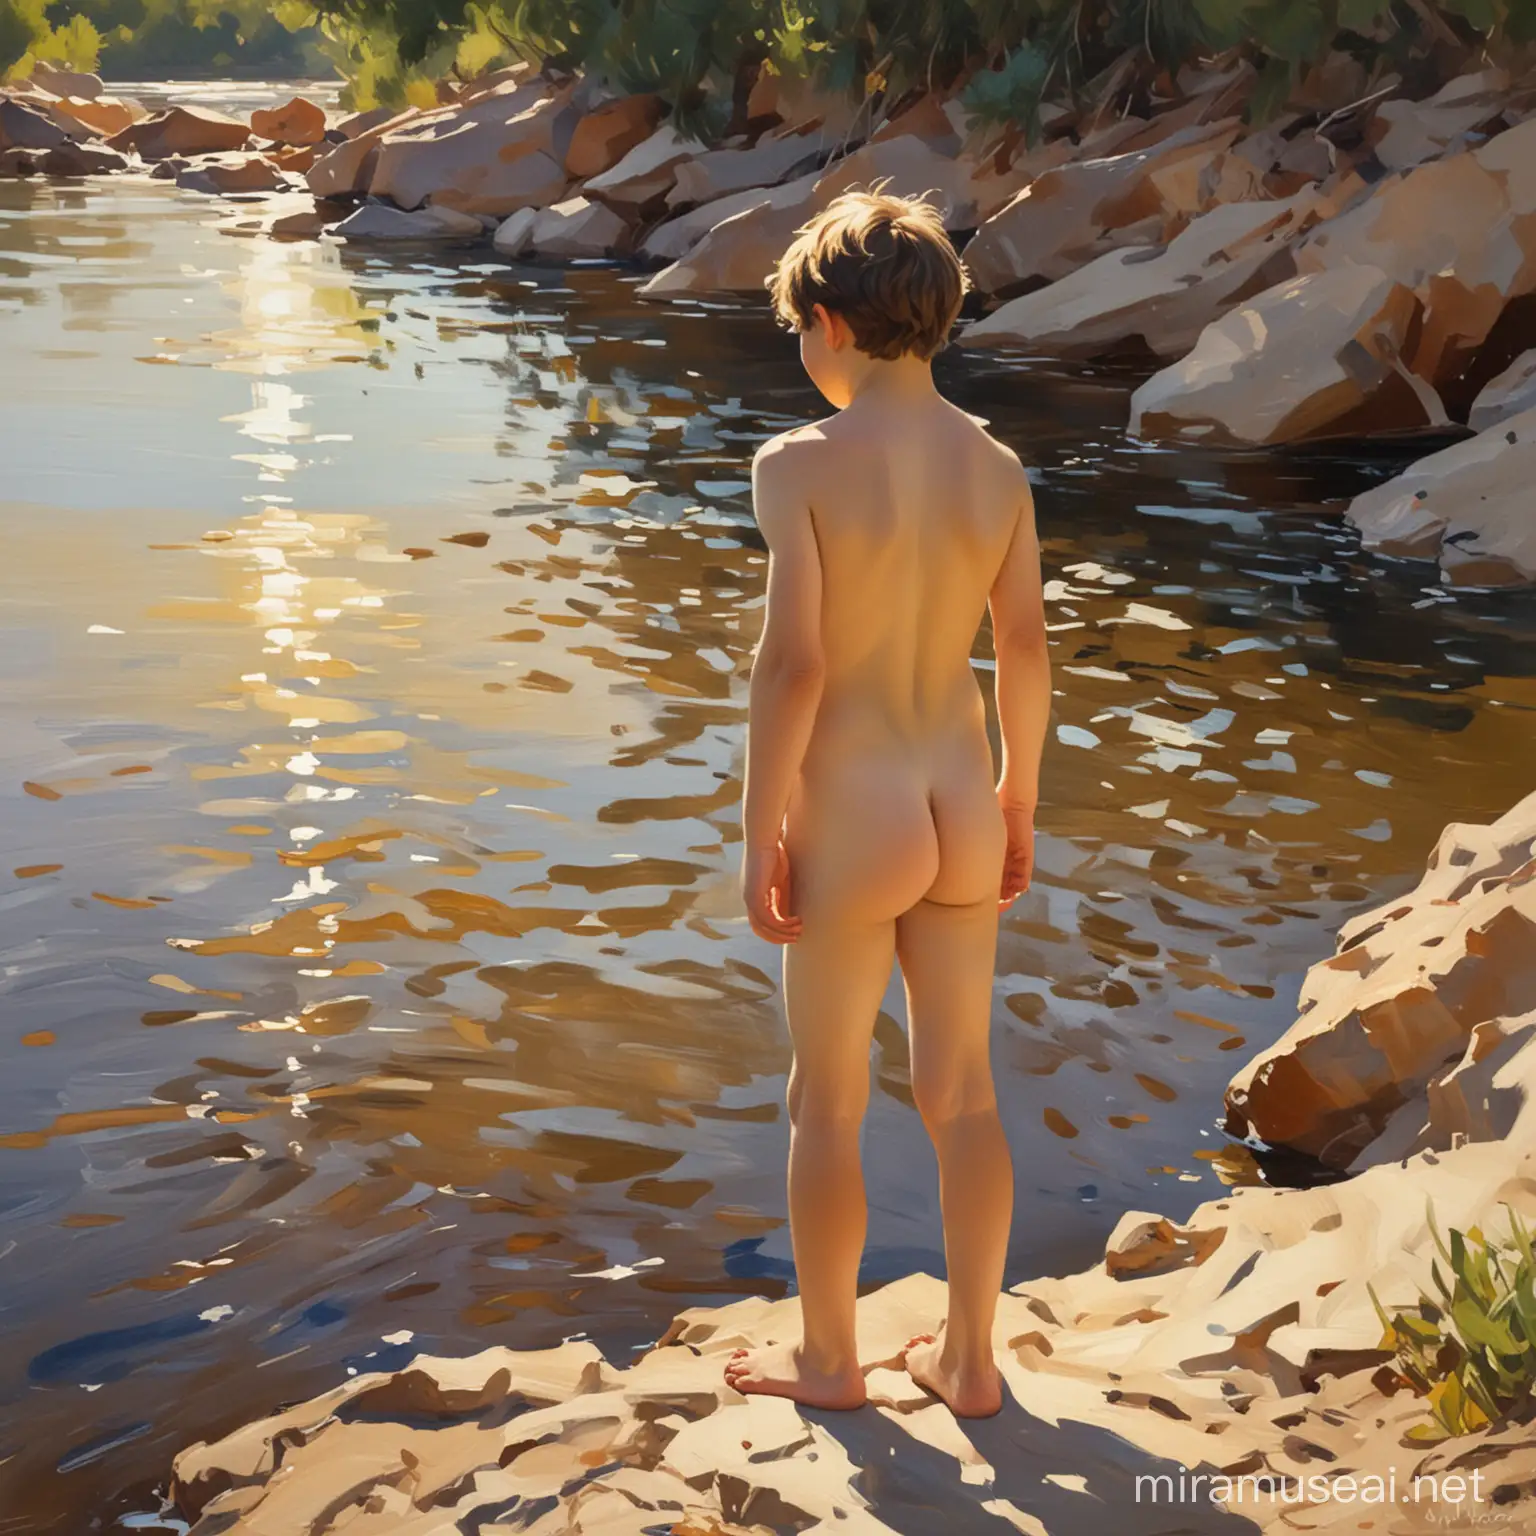 в стили хуудожника Хоакин Соролья ..картина. обнаженный мальчик в полный рост  на фоне реки .осфещение контражур.